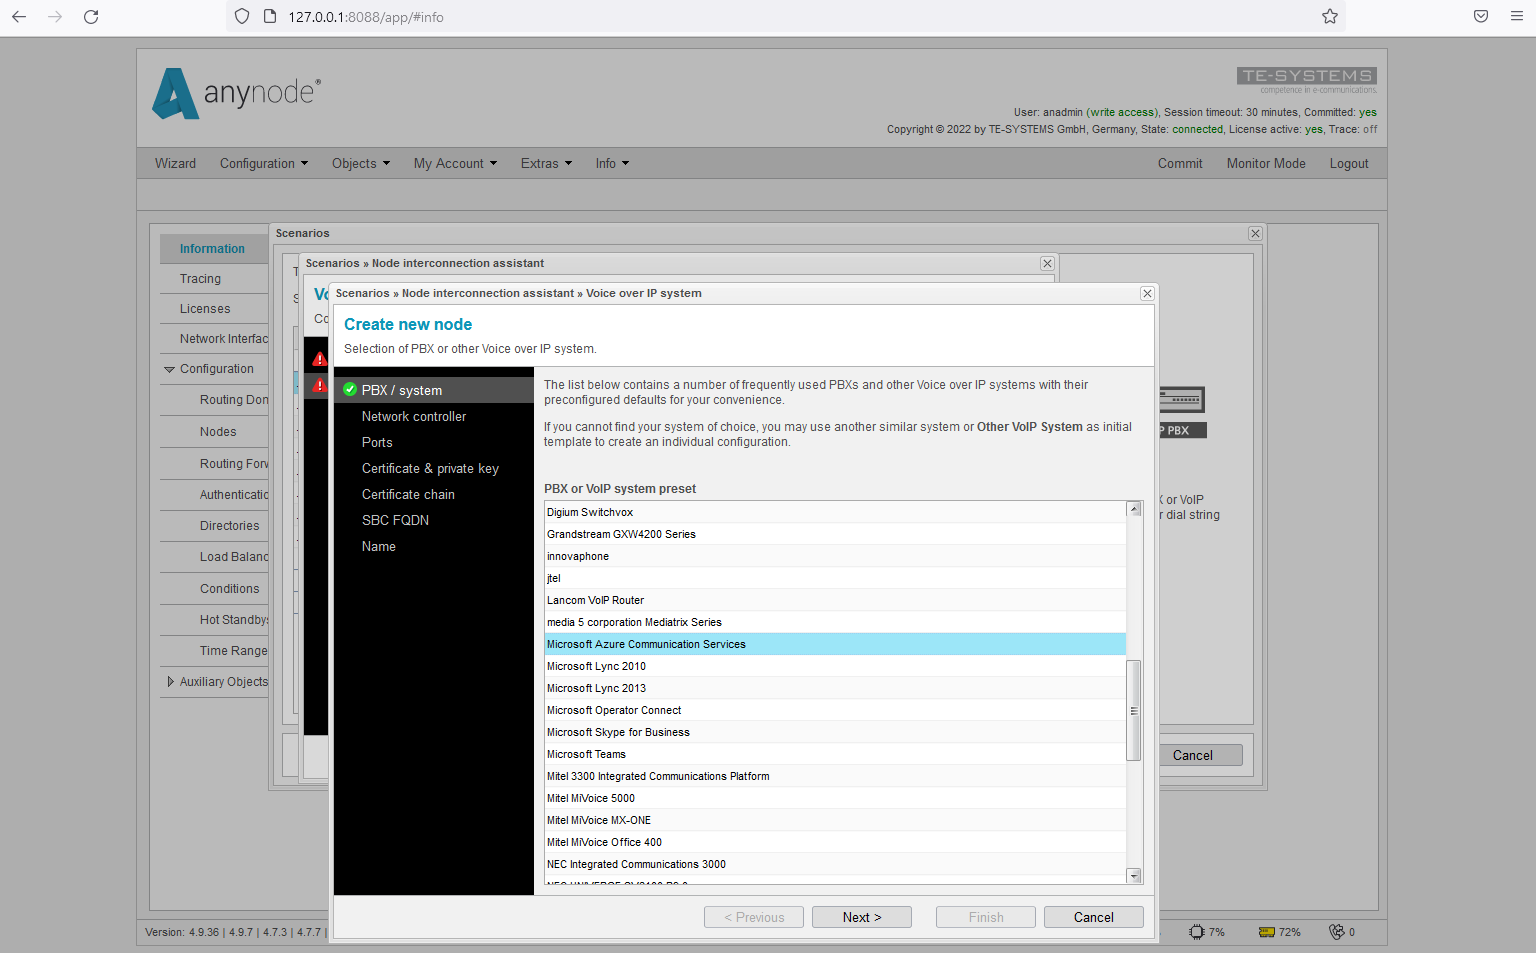 Screenshot: Sistema de Servicios de Comunicación de Microsoft Azure en el Asistente de Interconexión de Nodos.